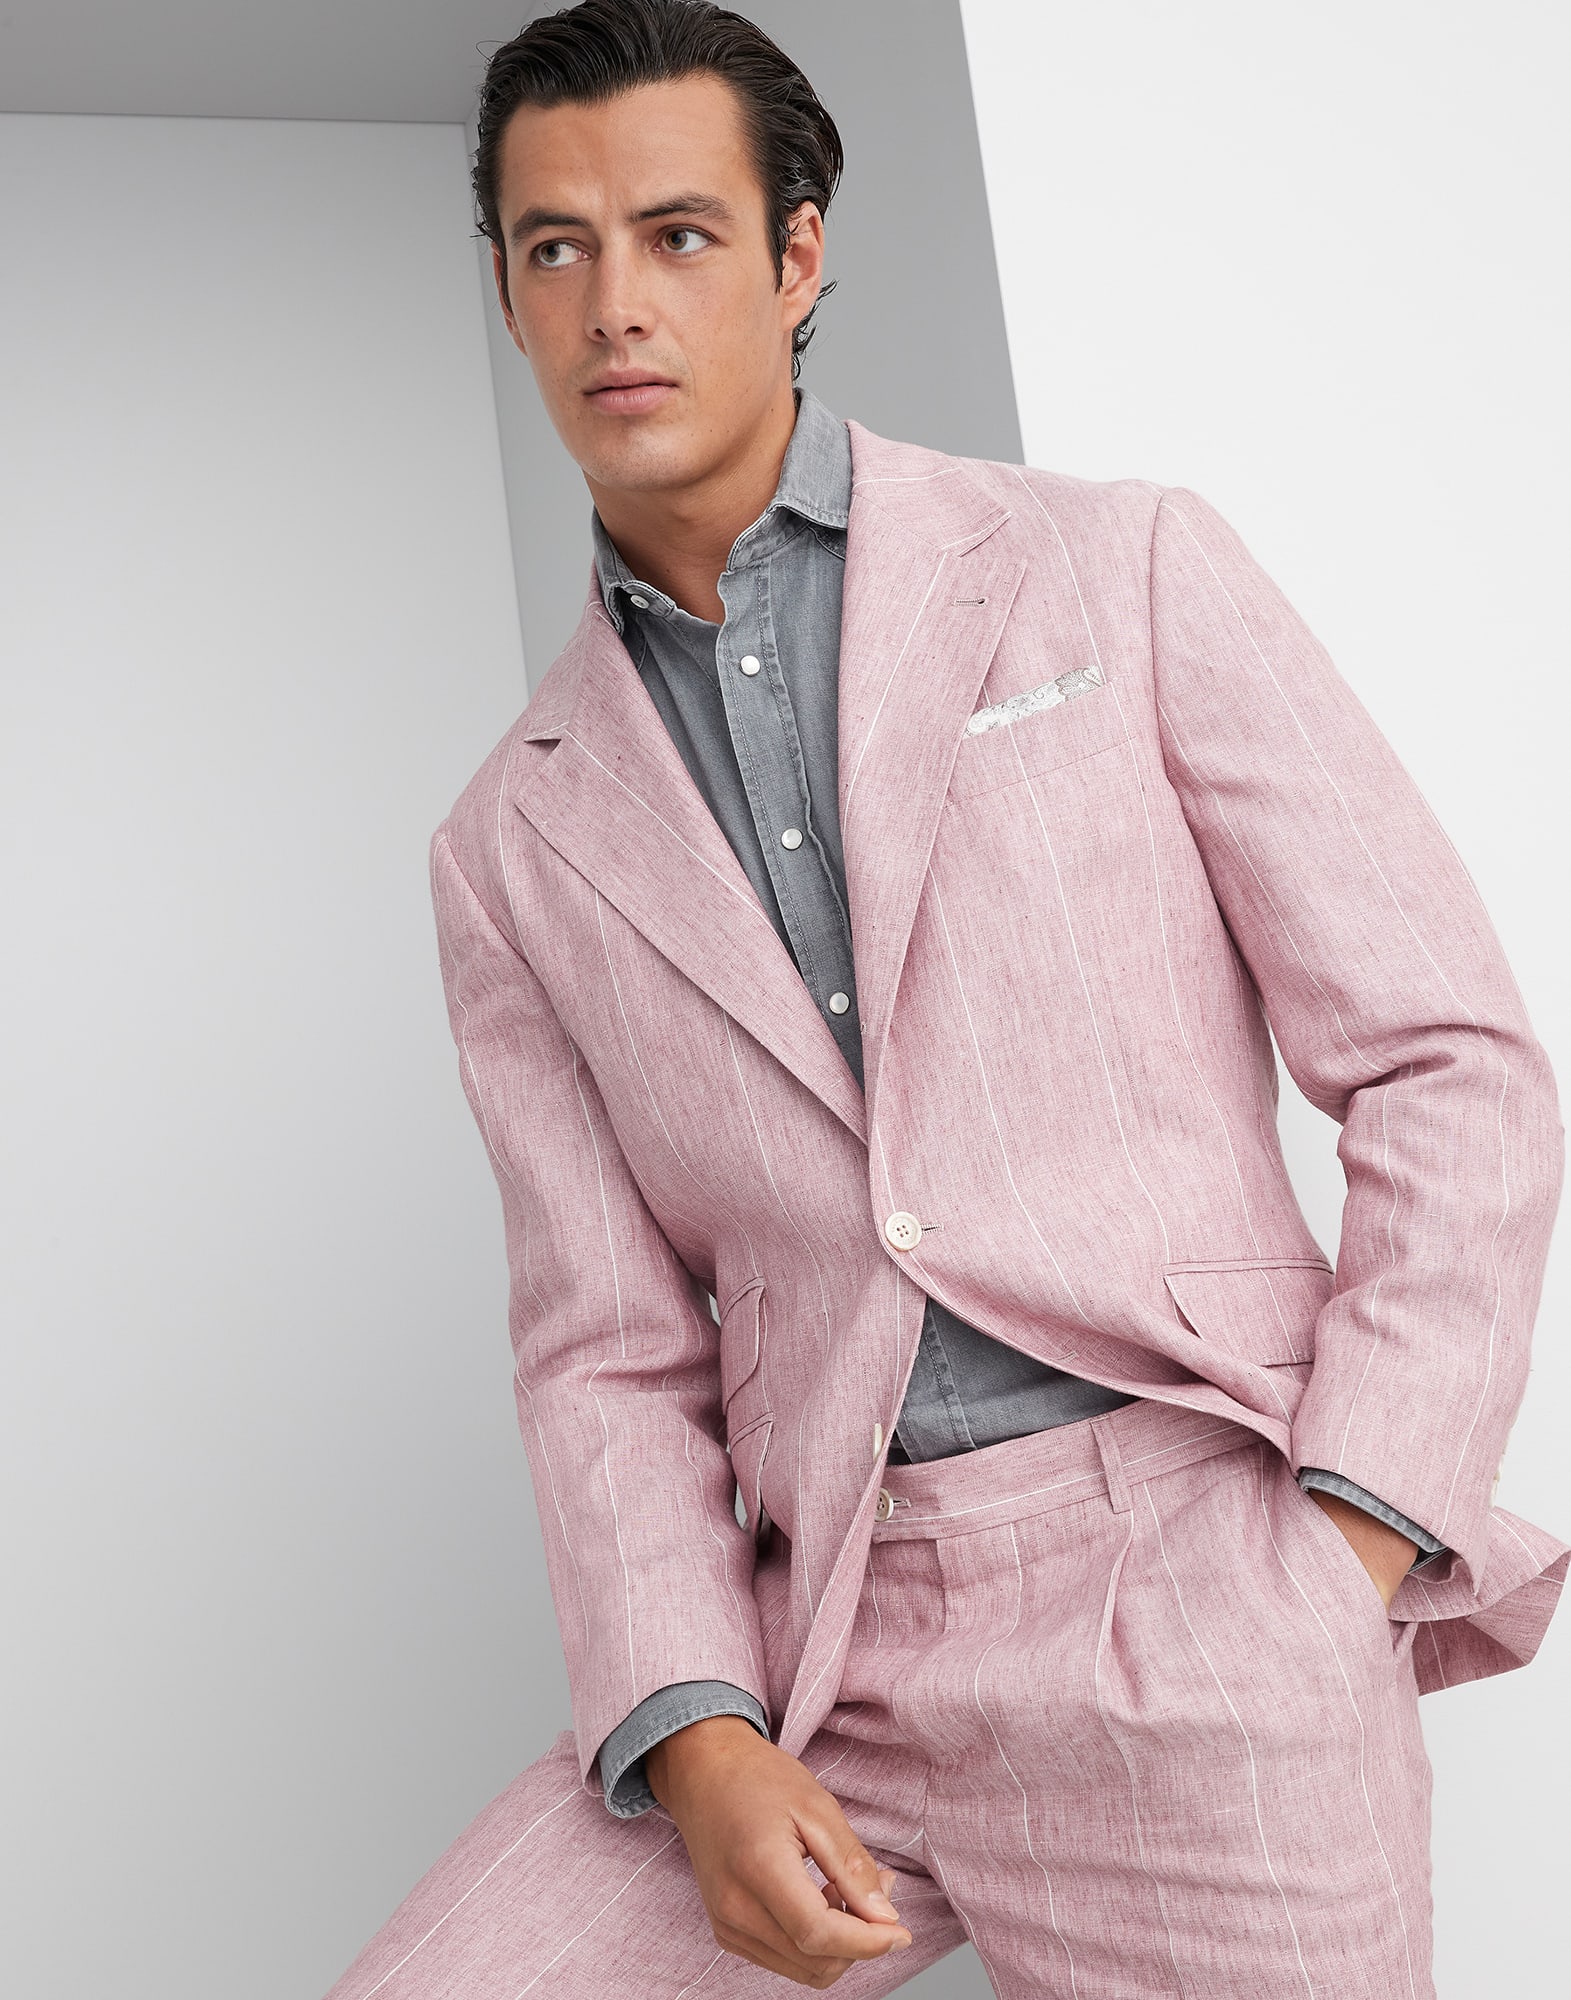 Бесподкладочный пиджак Cavallo Розовый Мужчина -
                        Brunello Cucinelli
                    